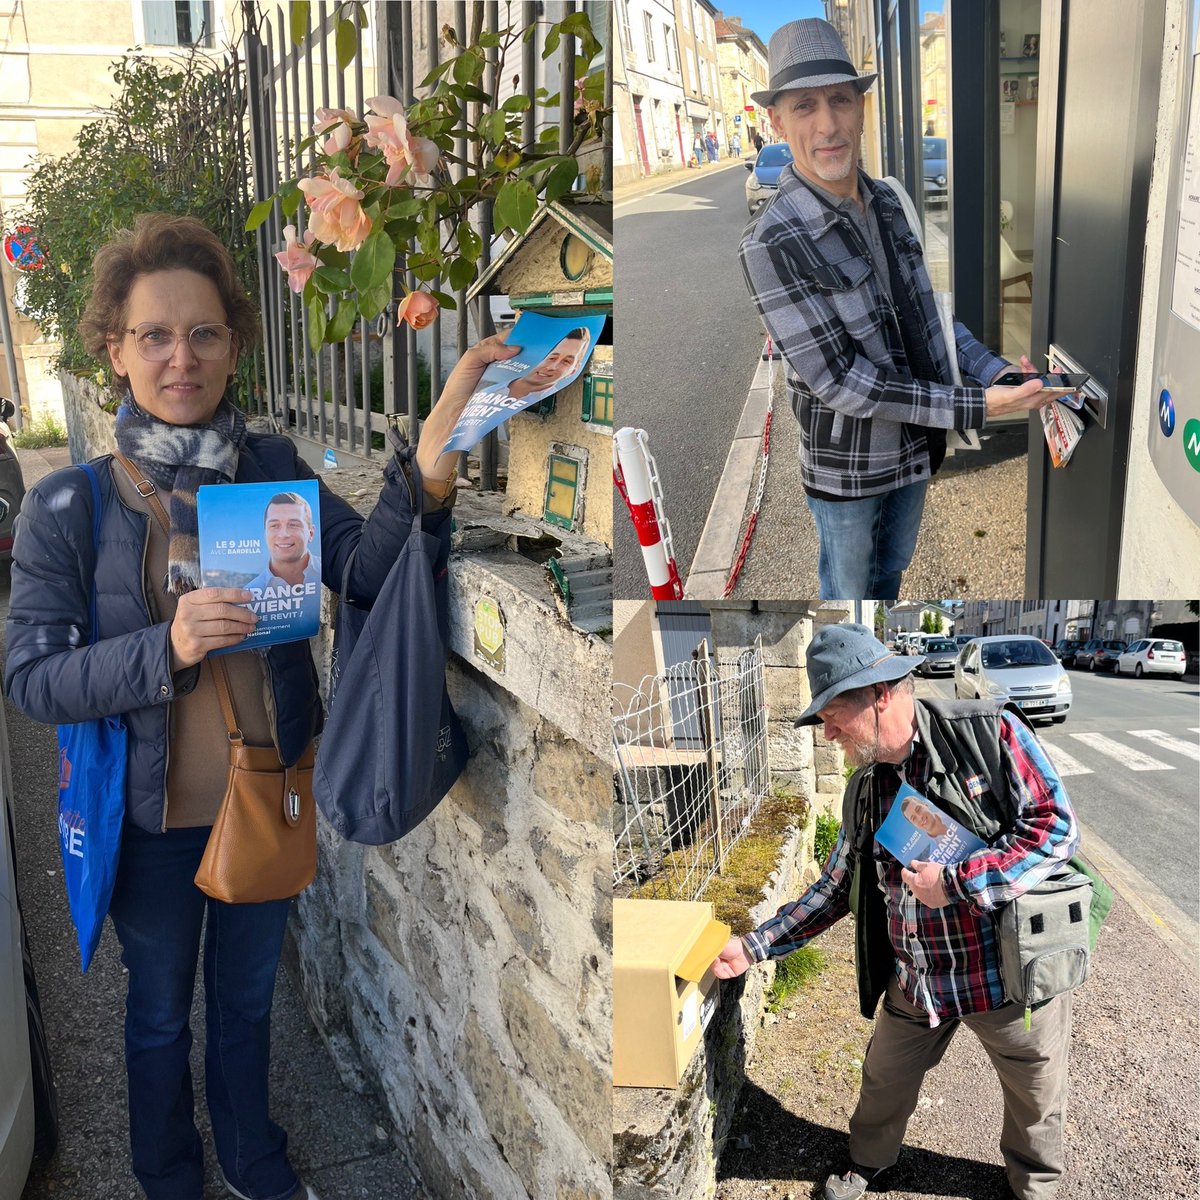 #Dordogne 

Après le marché, distribution de tracts dans les rues de Thiviers ; nos militants sont pleinement mobilisés pour qu’aucune voix ne manque à Jordan.

Le 9 juin : un seul tour, un seul vote !

#VivementLe9Juin